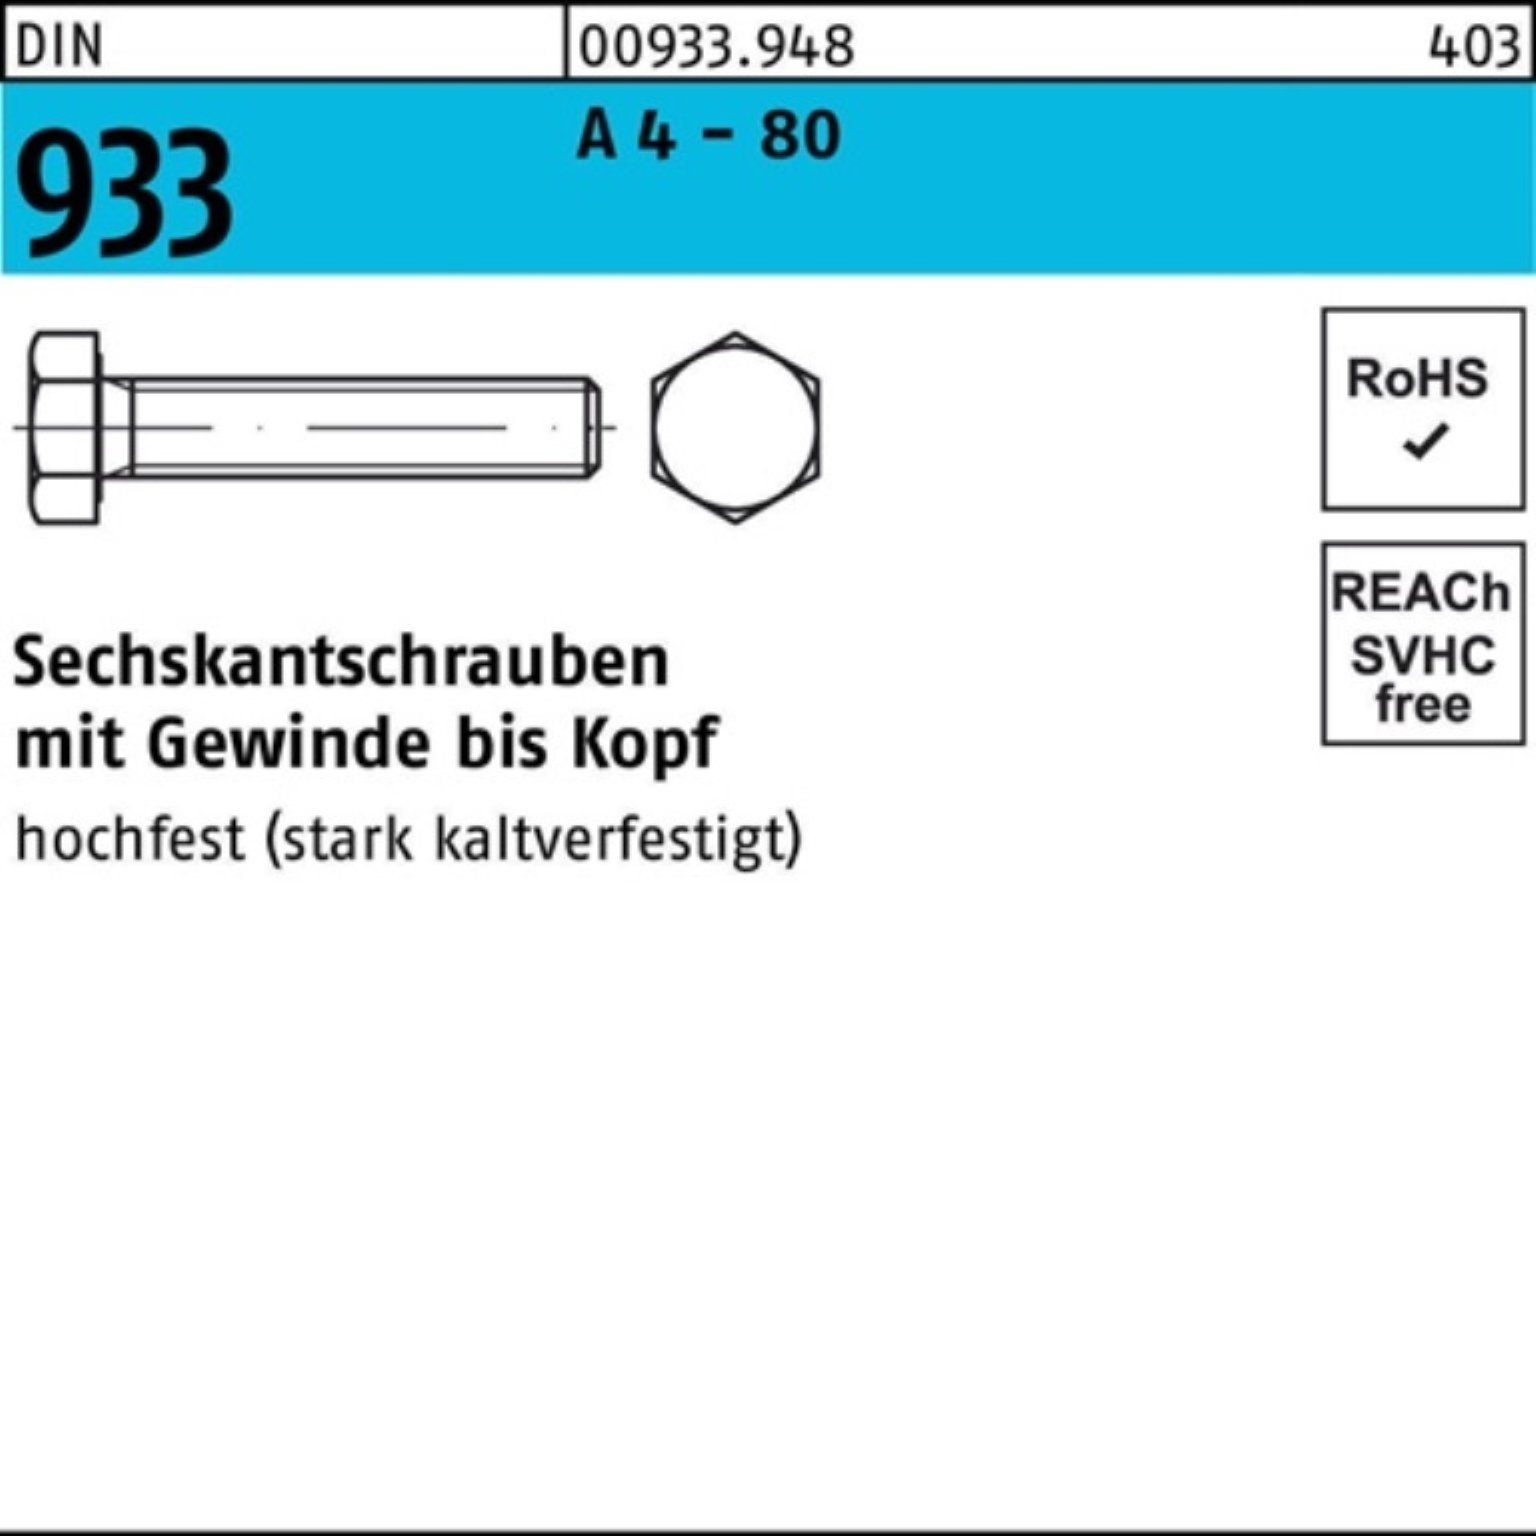 Reyher Sechskantschraube 100er Pack Sechskantschraube DIN 933 VG M6x 25 A 4 - 80 100 Stück DIN